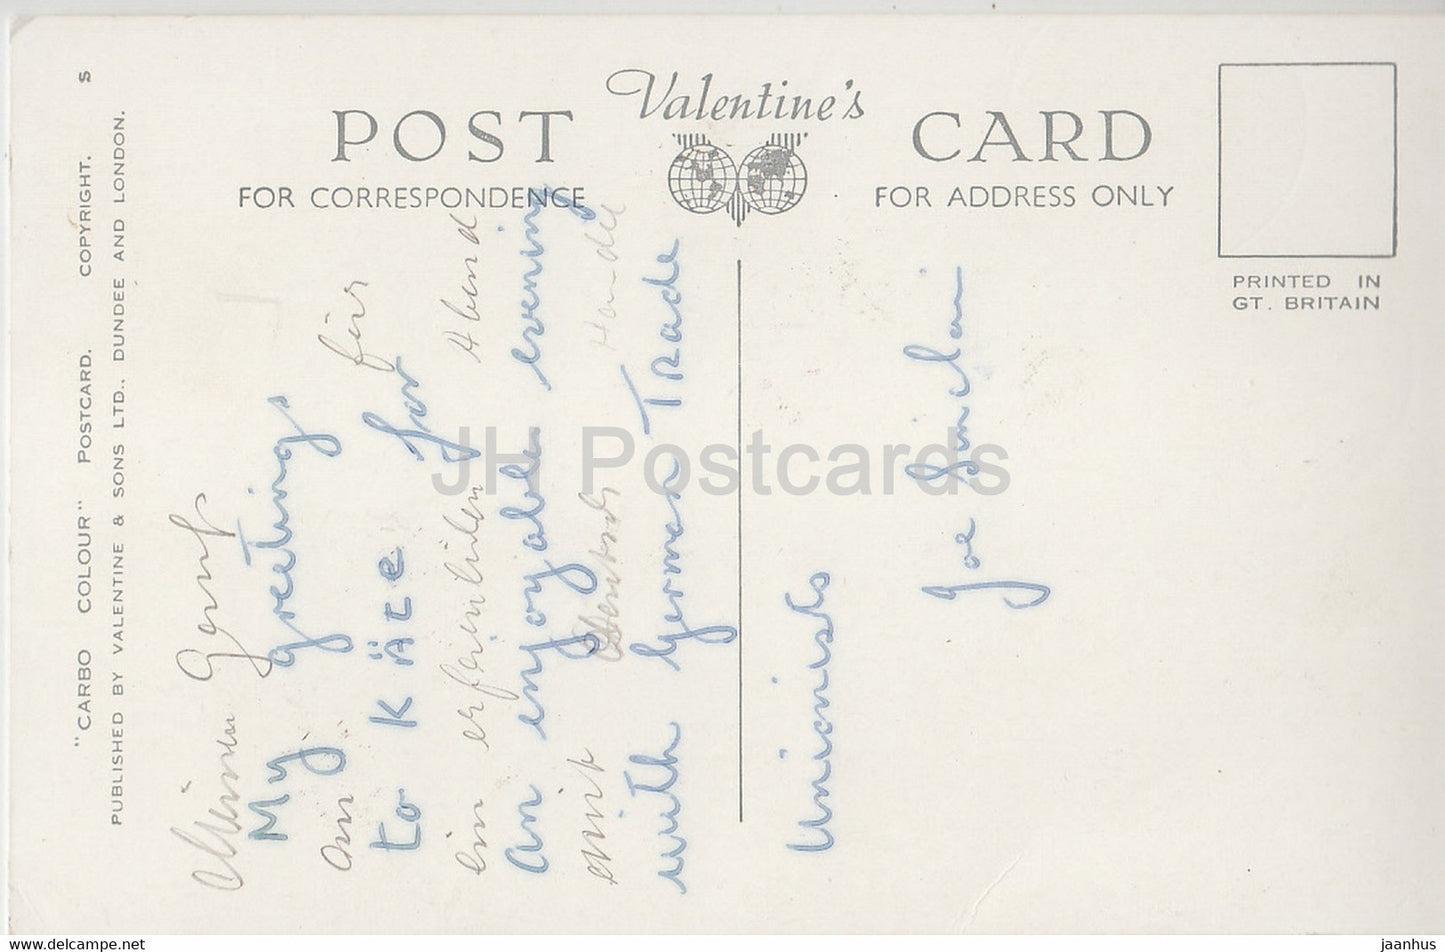 Ein Cottage in Irland – Eva Brennan – alte Postkarte – Irland – gebraucht